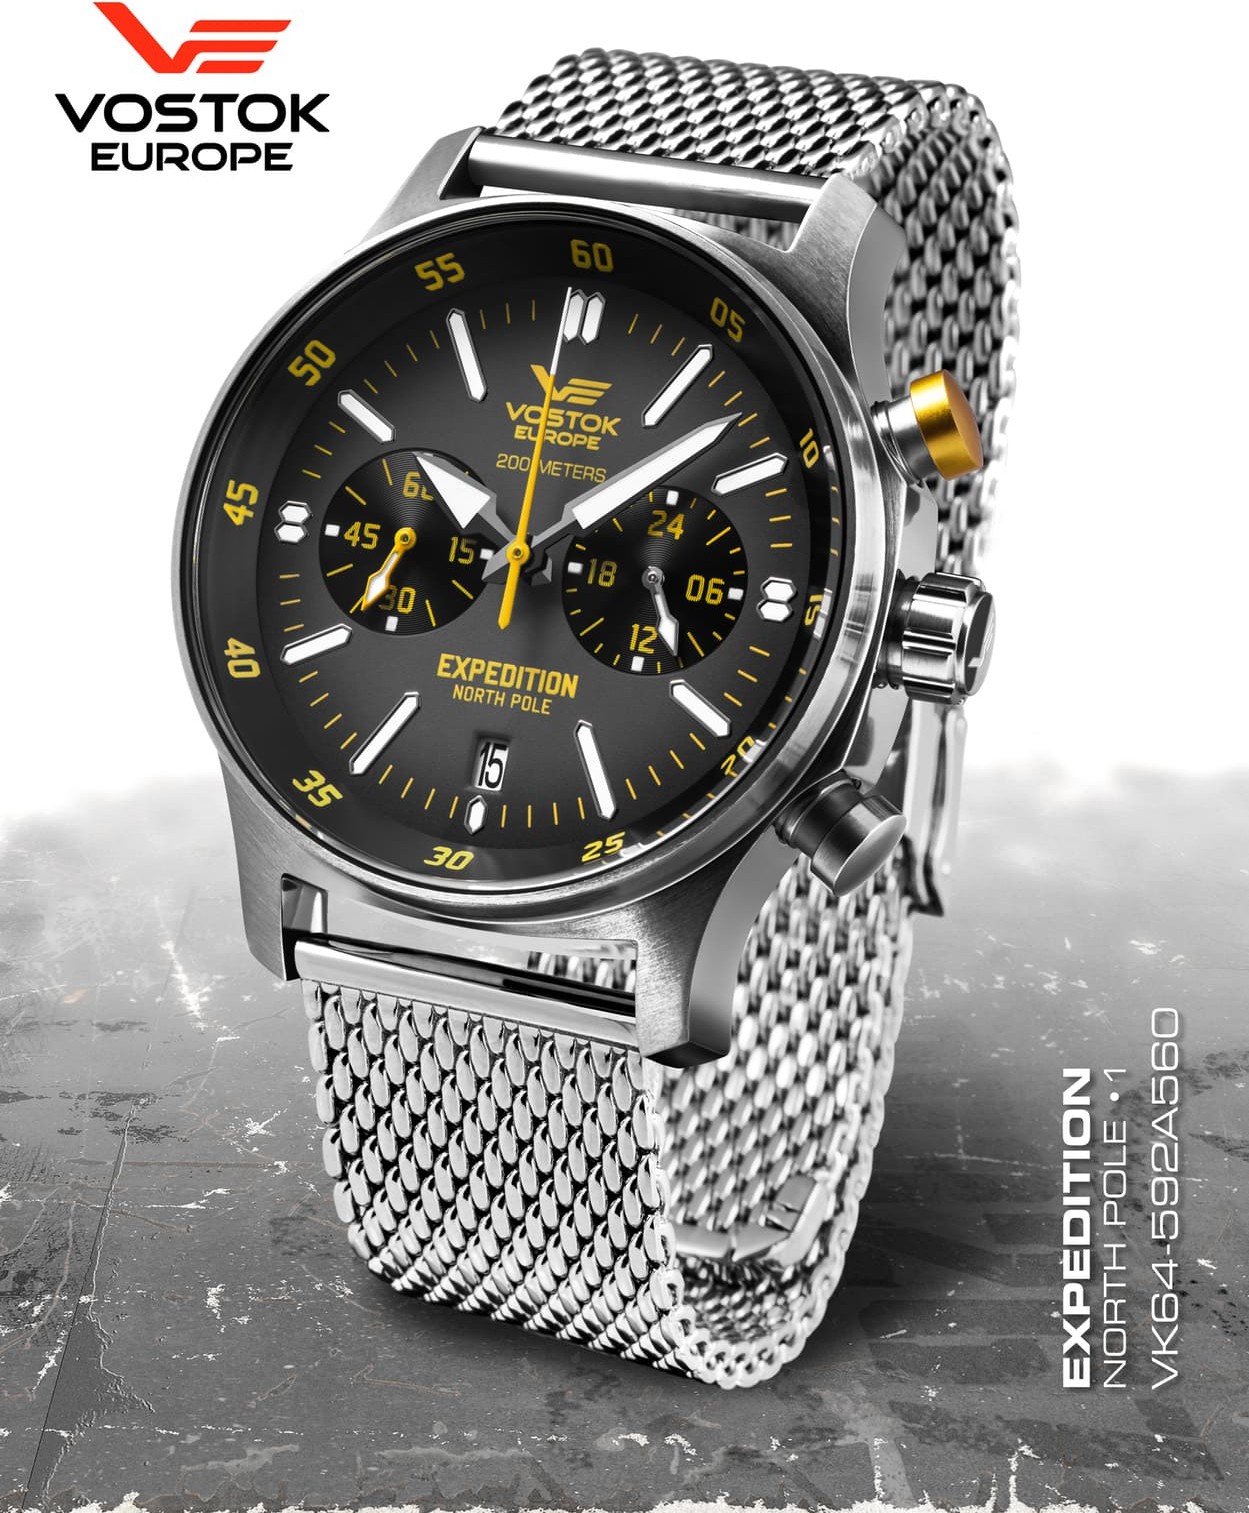  Vostok Europe Expedition Nordpol 1 Chronograph black/yellow 